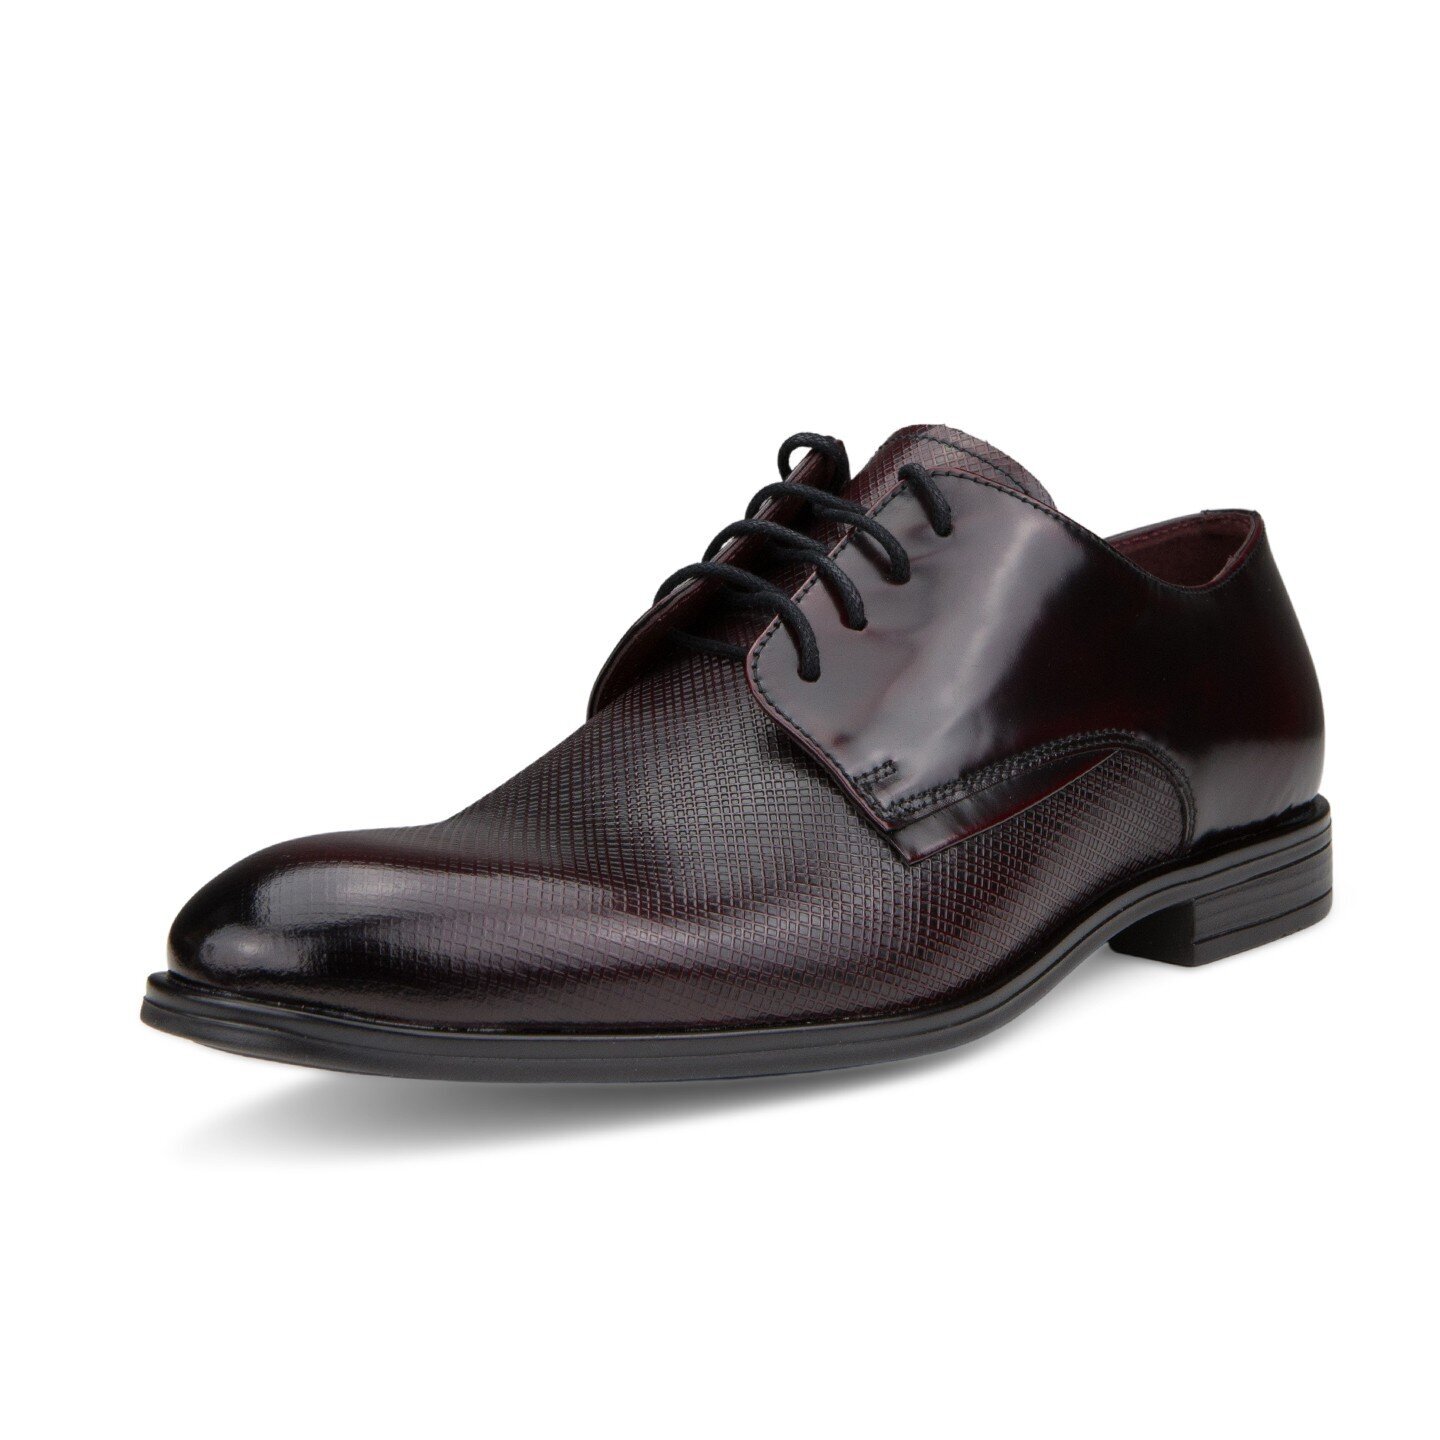 Klasikiniai batai vyrams Nicolo Ferretti 52021005222, rudi kaina | pigu.lt